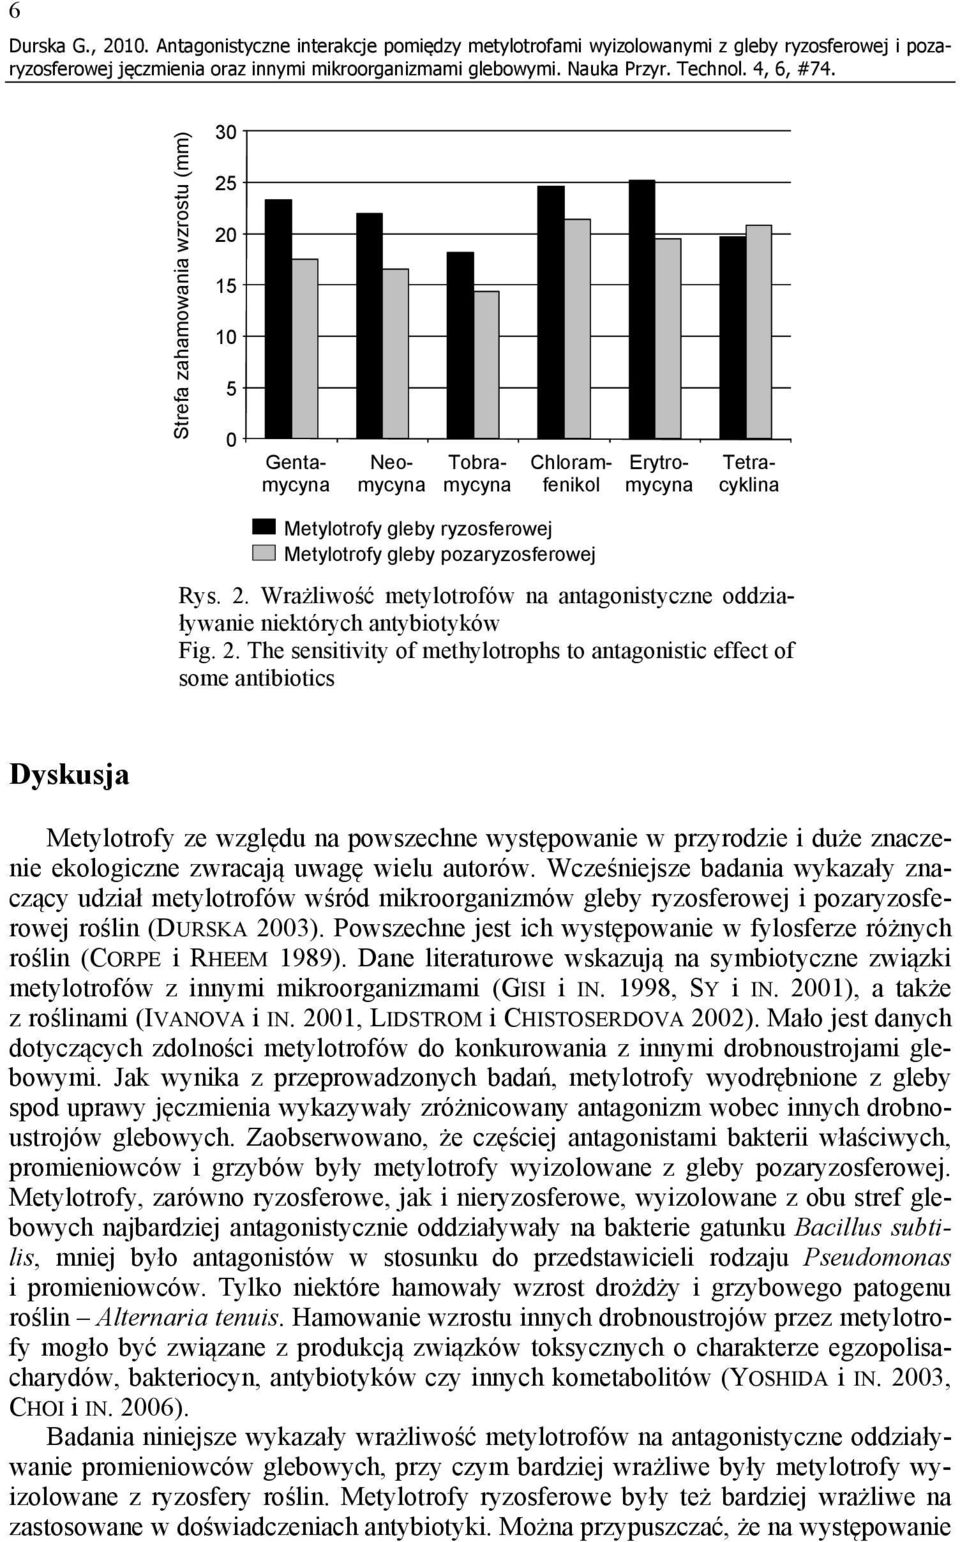 Chloramfenikol Erytromycyna Tetracyklina Metylotrofy gleby pozaryzosferowej Rys. 2.